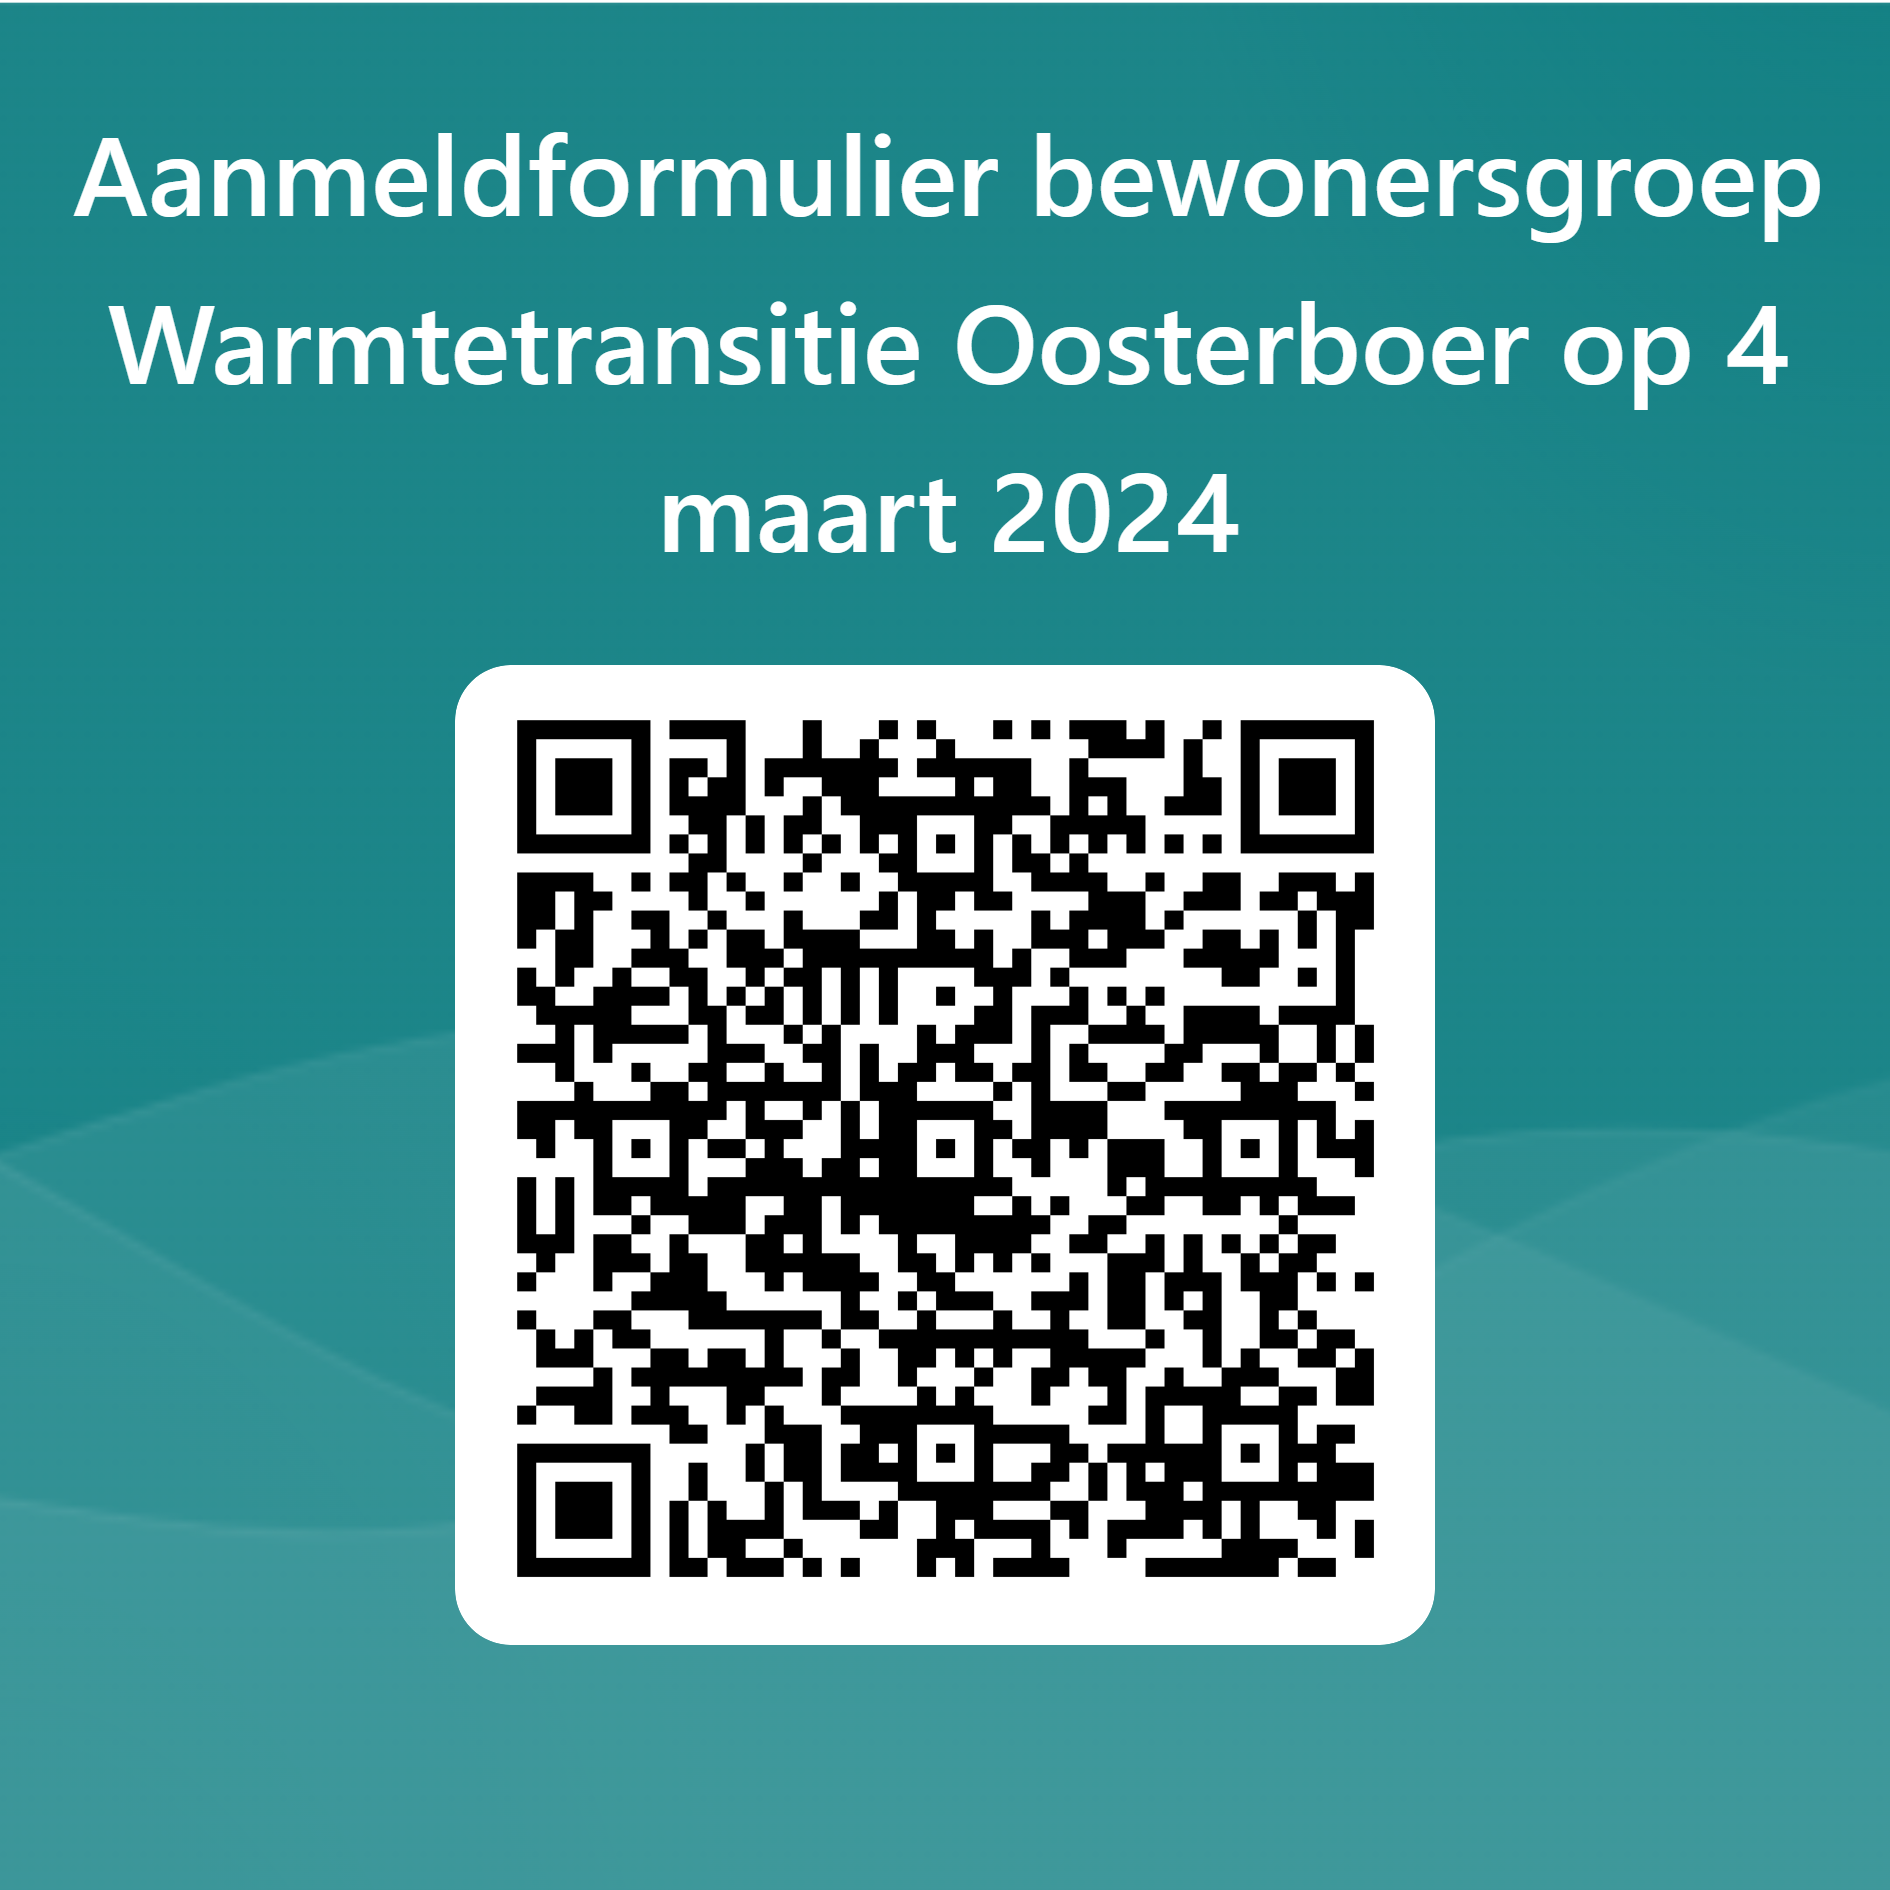 QRCode voor Aanmeldformulier bewonersgroep Warmtetransitie Oosterboer op 4 maart 2024